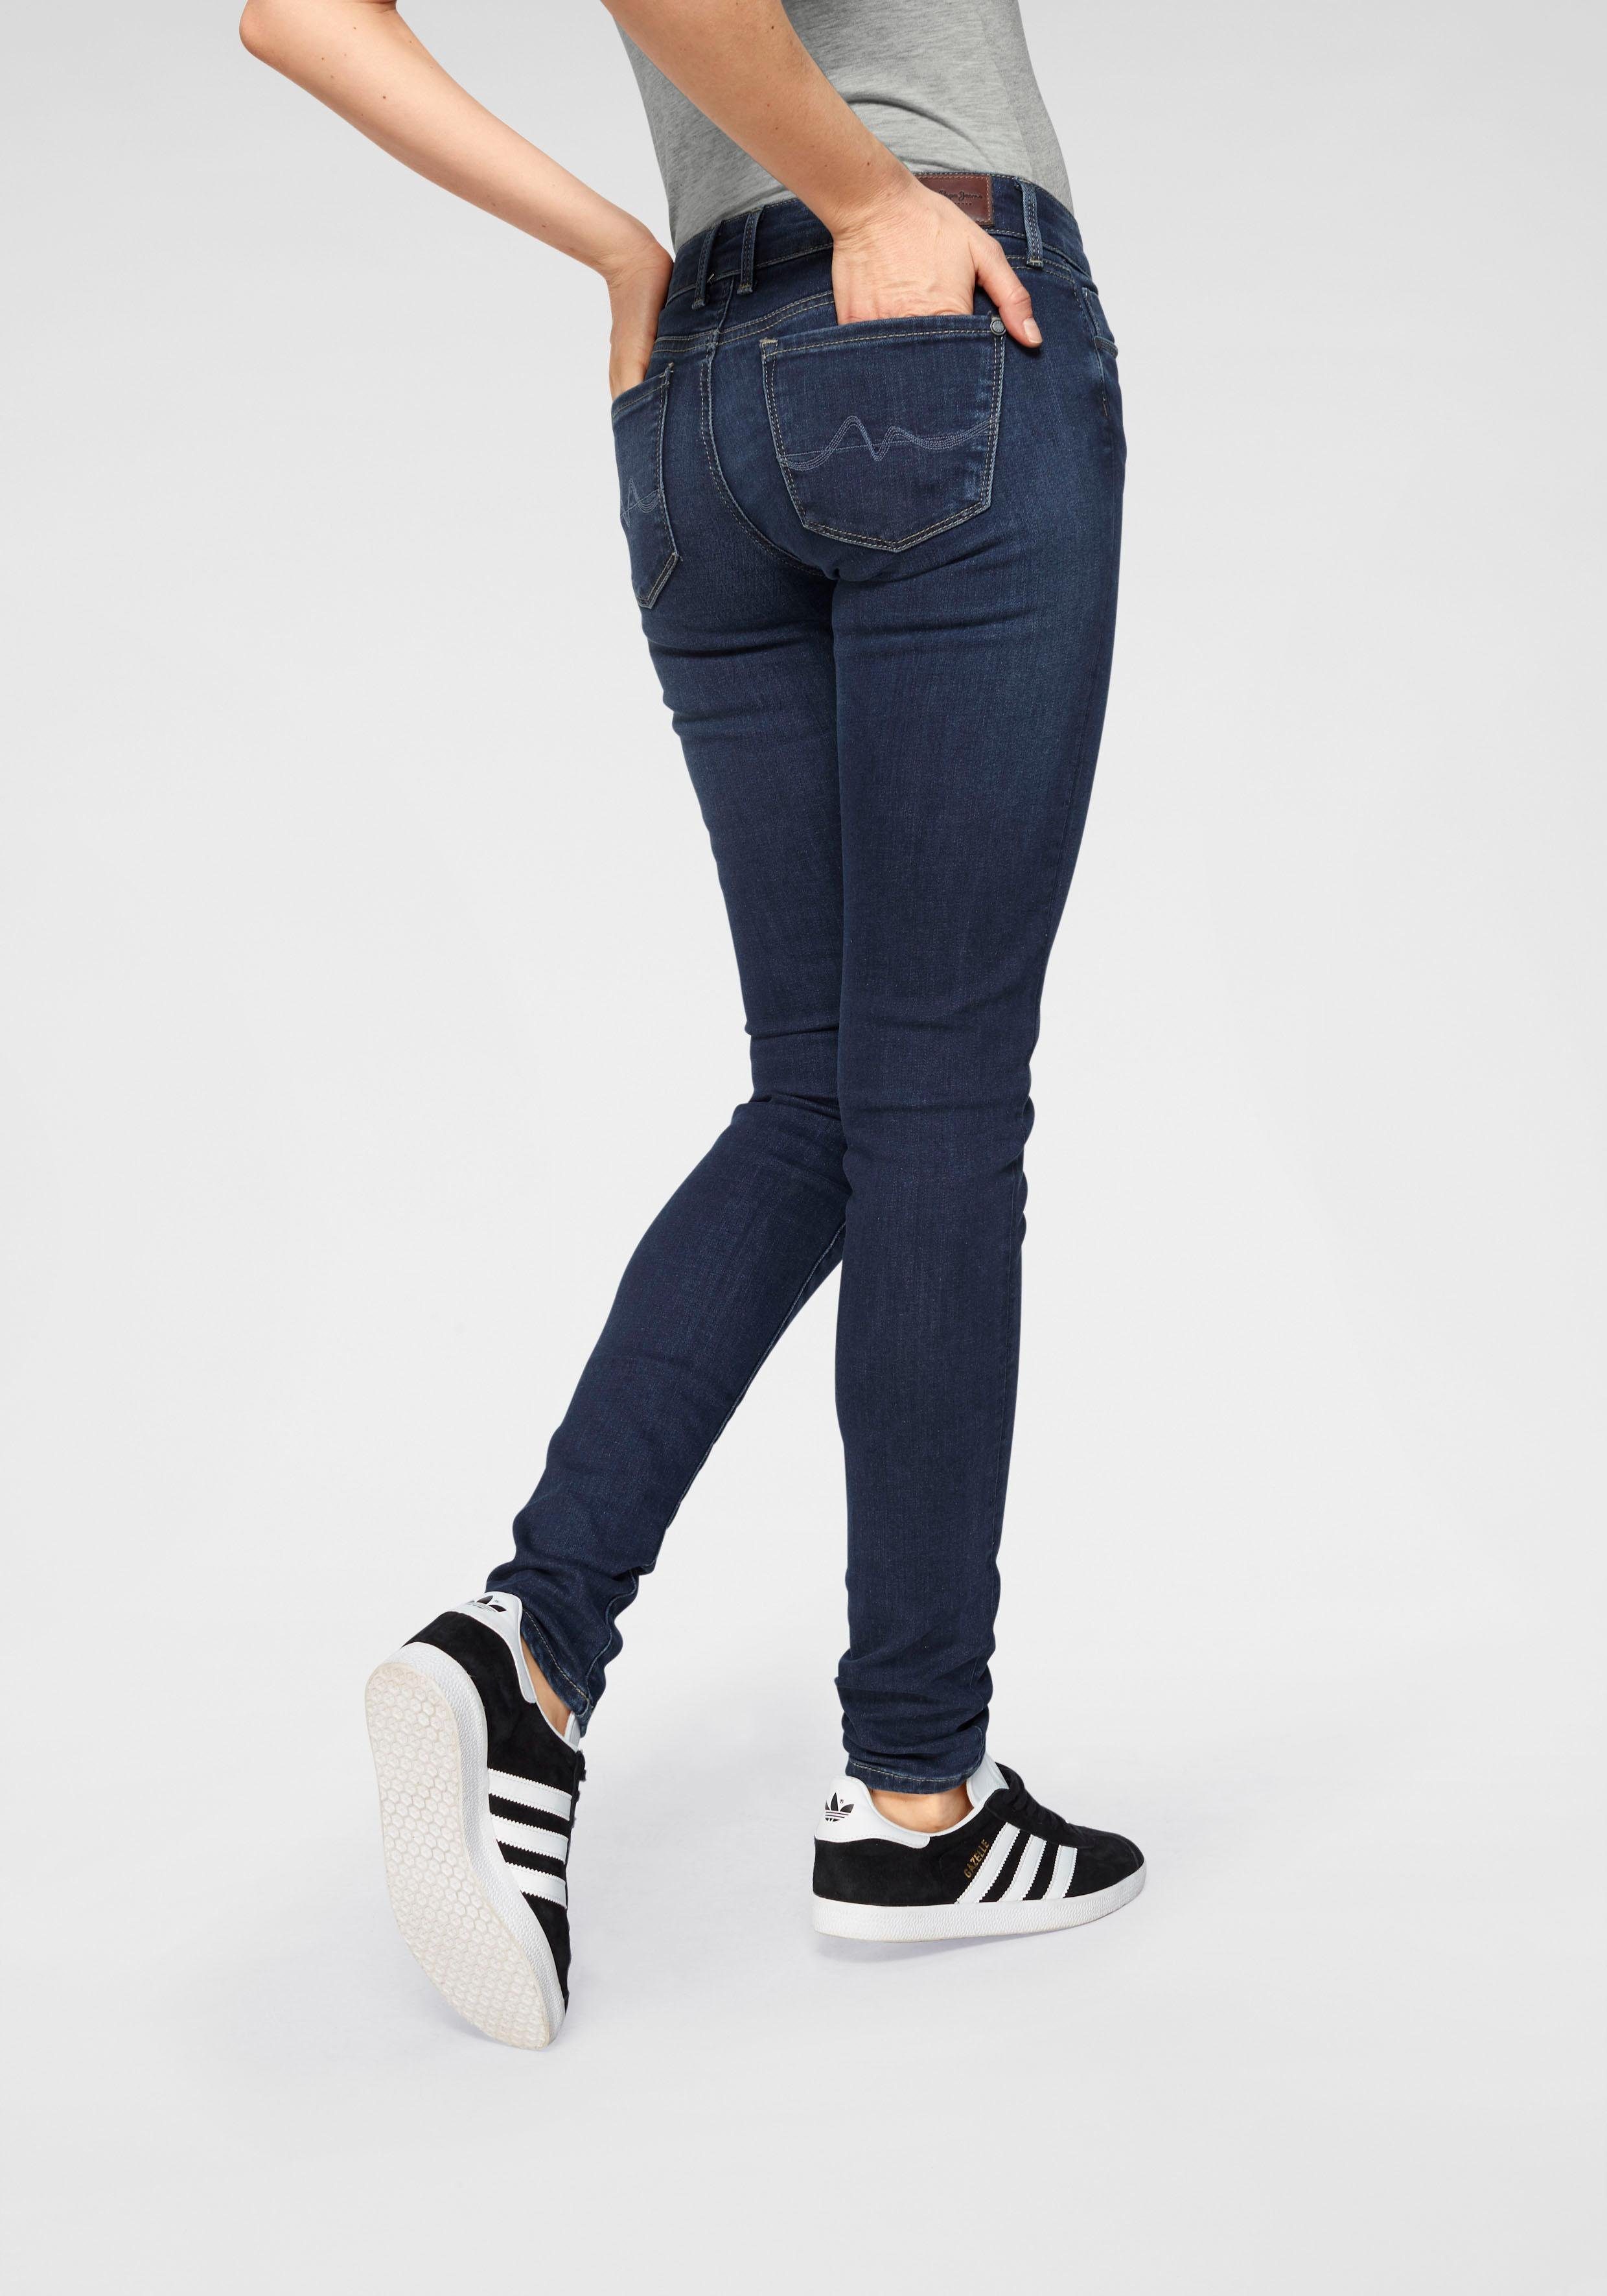 used SOHO H45 Jeans Stretch-Anteil Skinny-fit-Jeans im 5-Pocket-Stil Bund mit dark und worn 1-Knopf Pepe